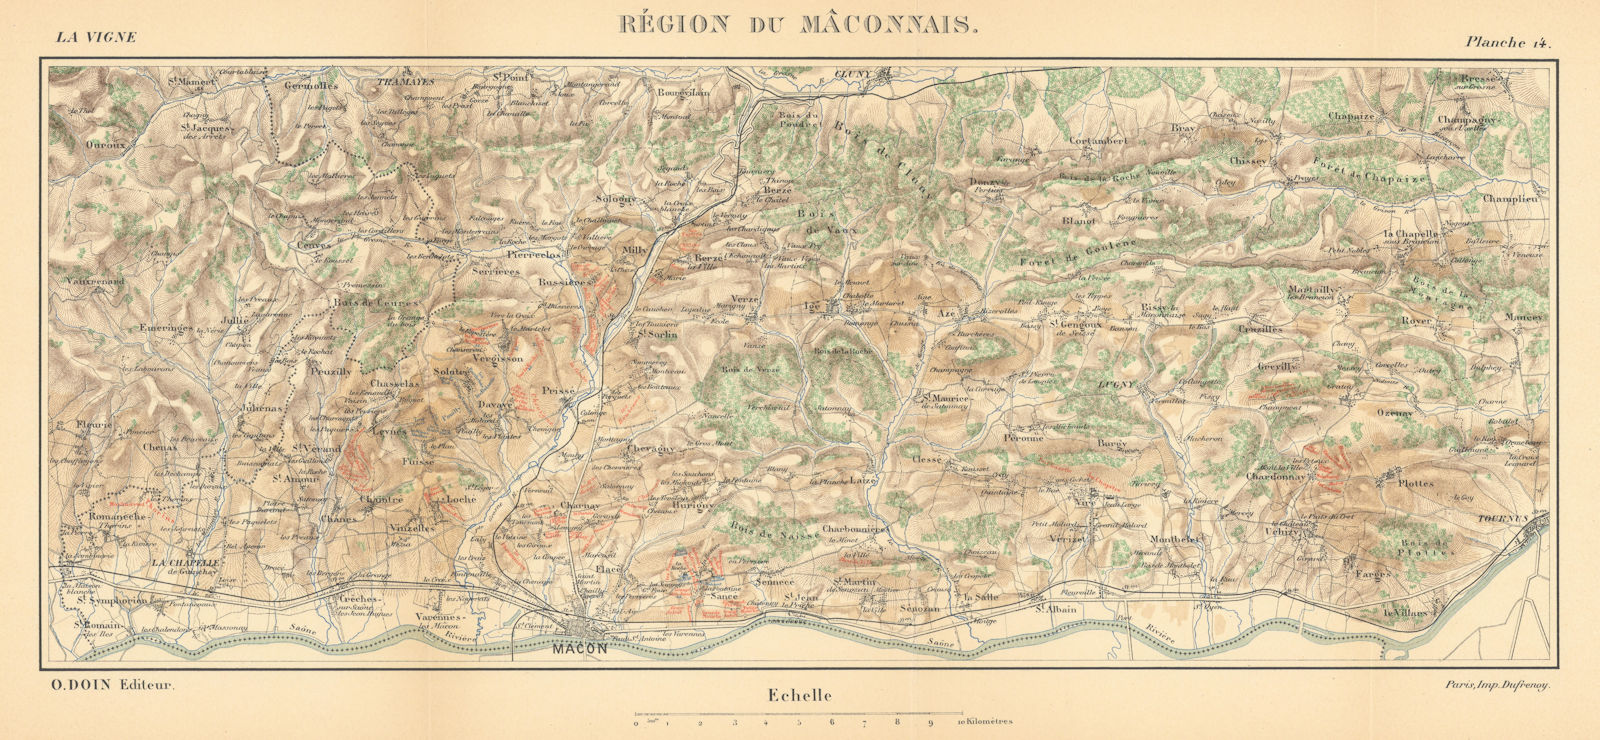 Associate Product Région du Mâconnais. Burgundy wine map. HAUSERMANN 1901 old antique chart